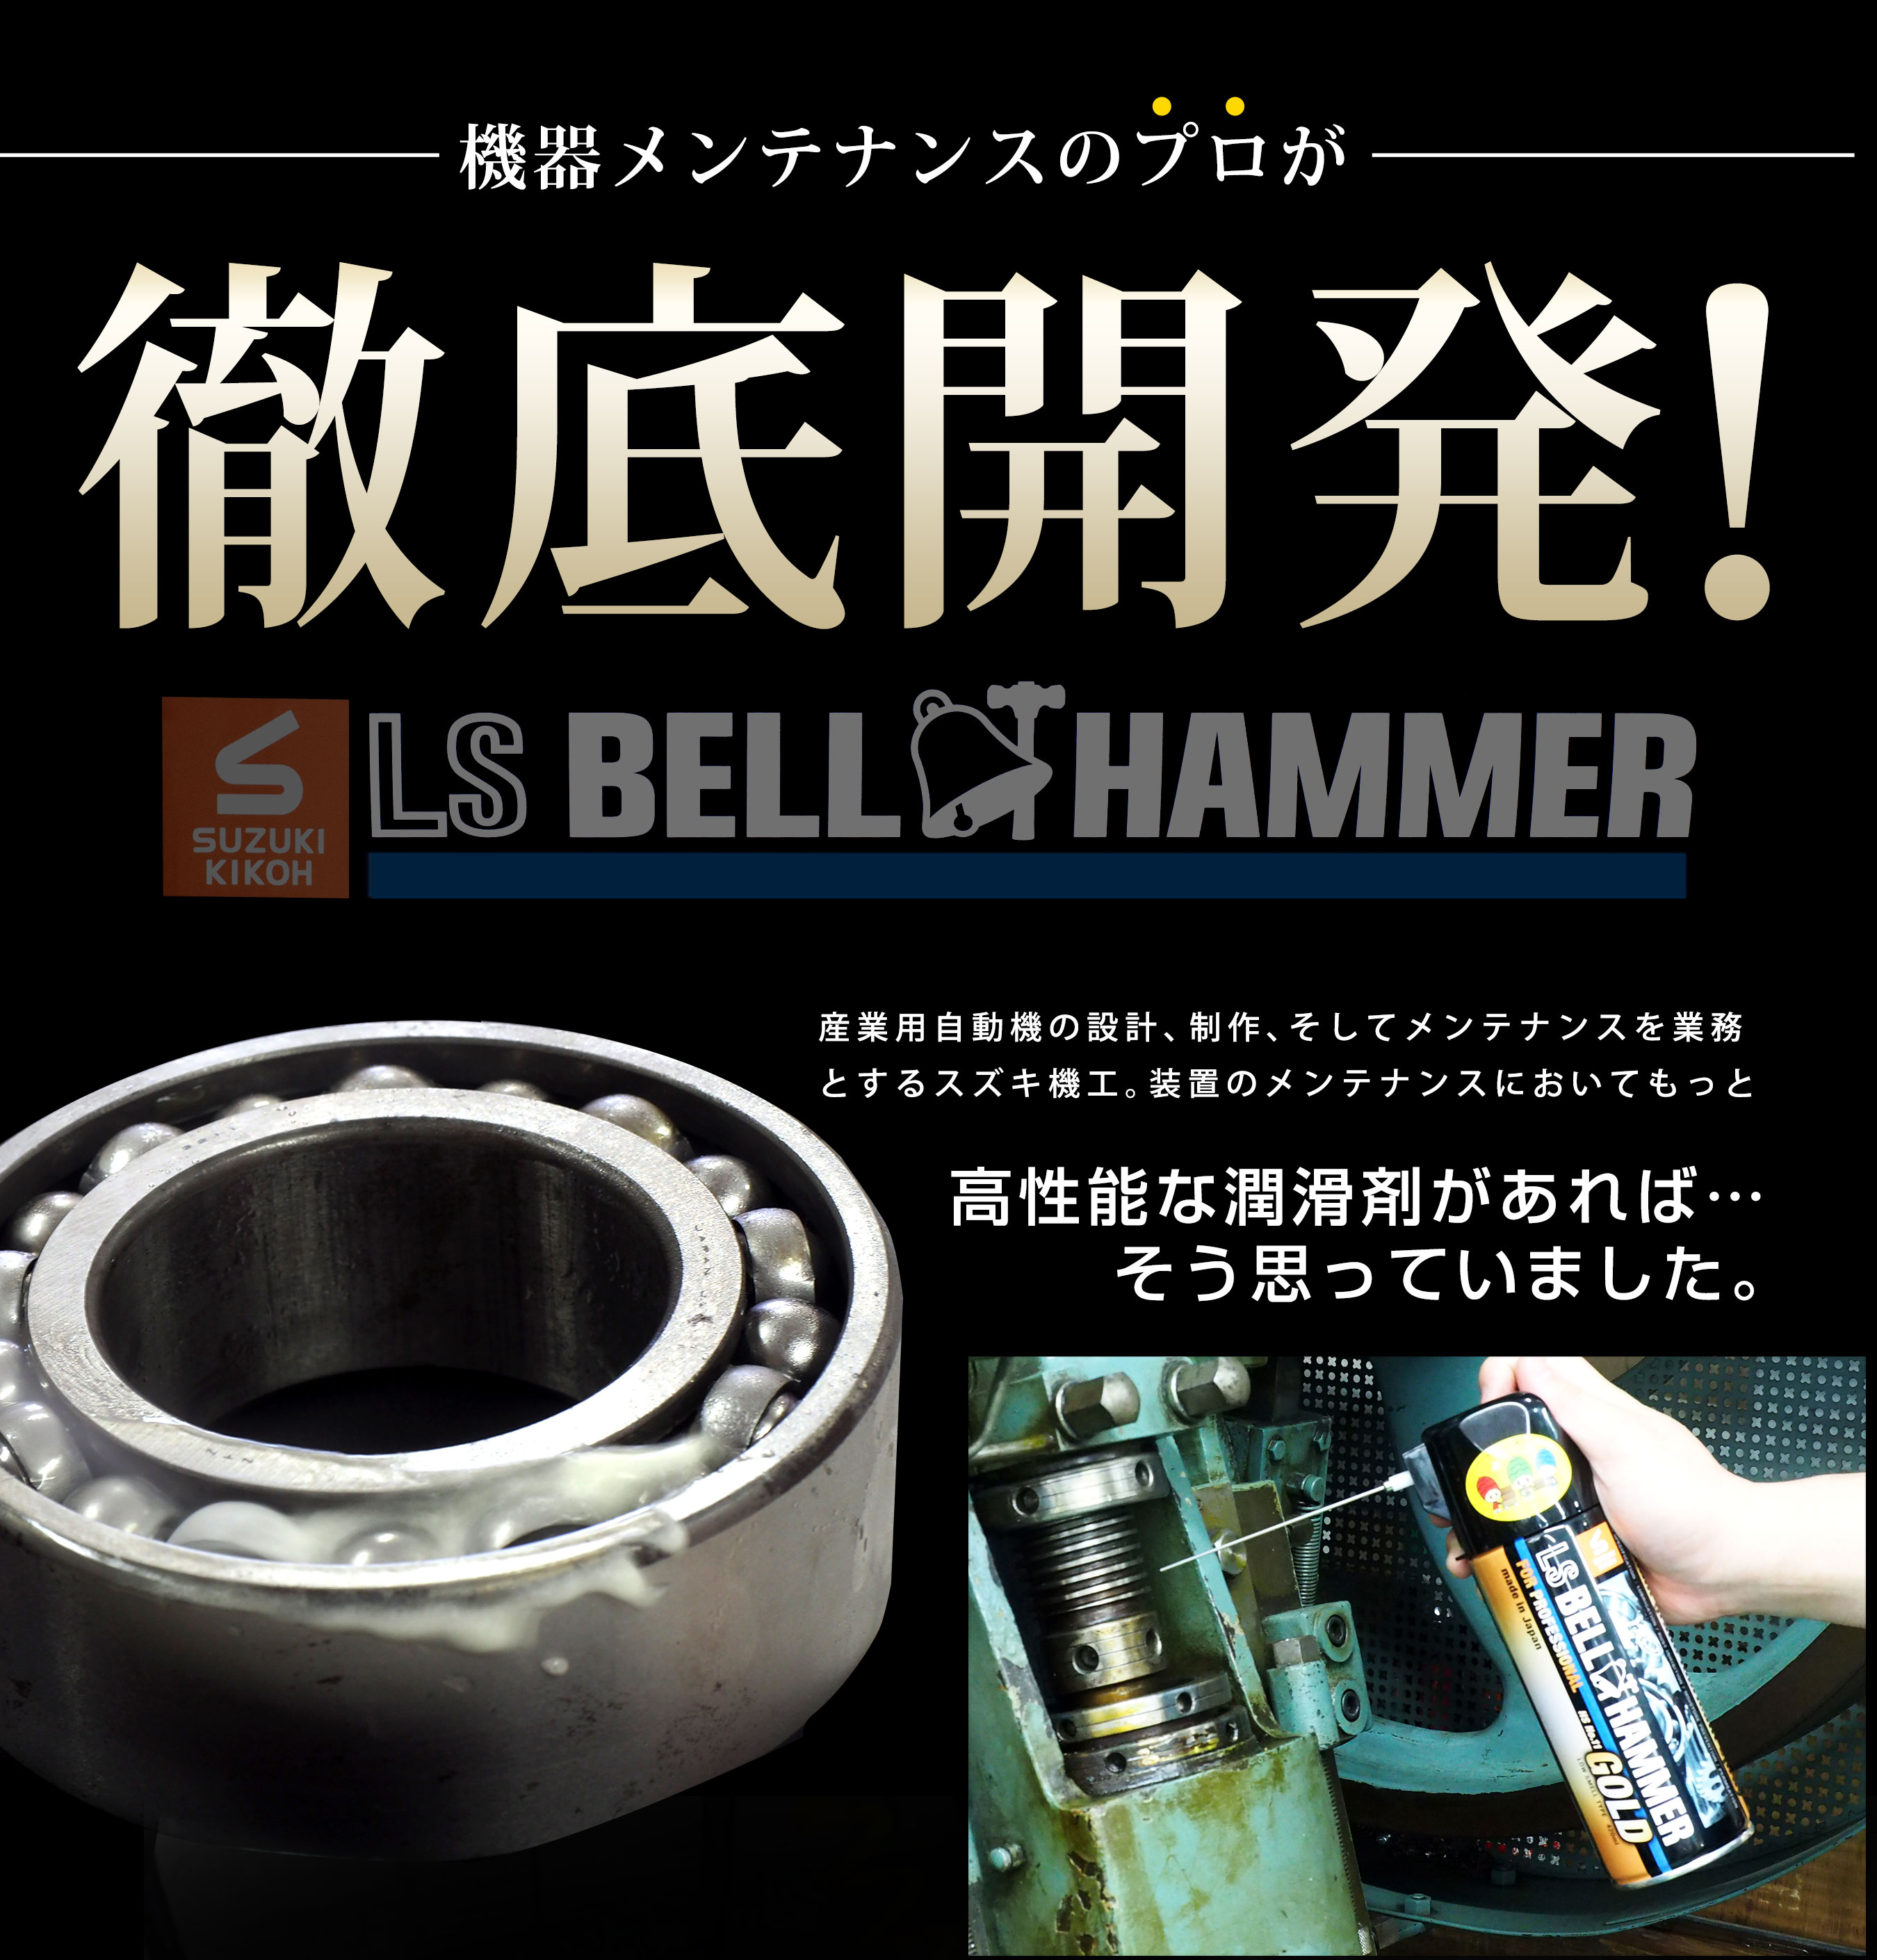 ベルハンマー メタルグリス 300g BELL HAMMER METAL GREASE スズキ機工 SUSボルト フランジ チャック 固着防止  耐熱温度800℃